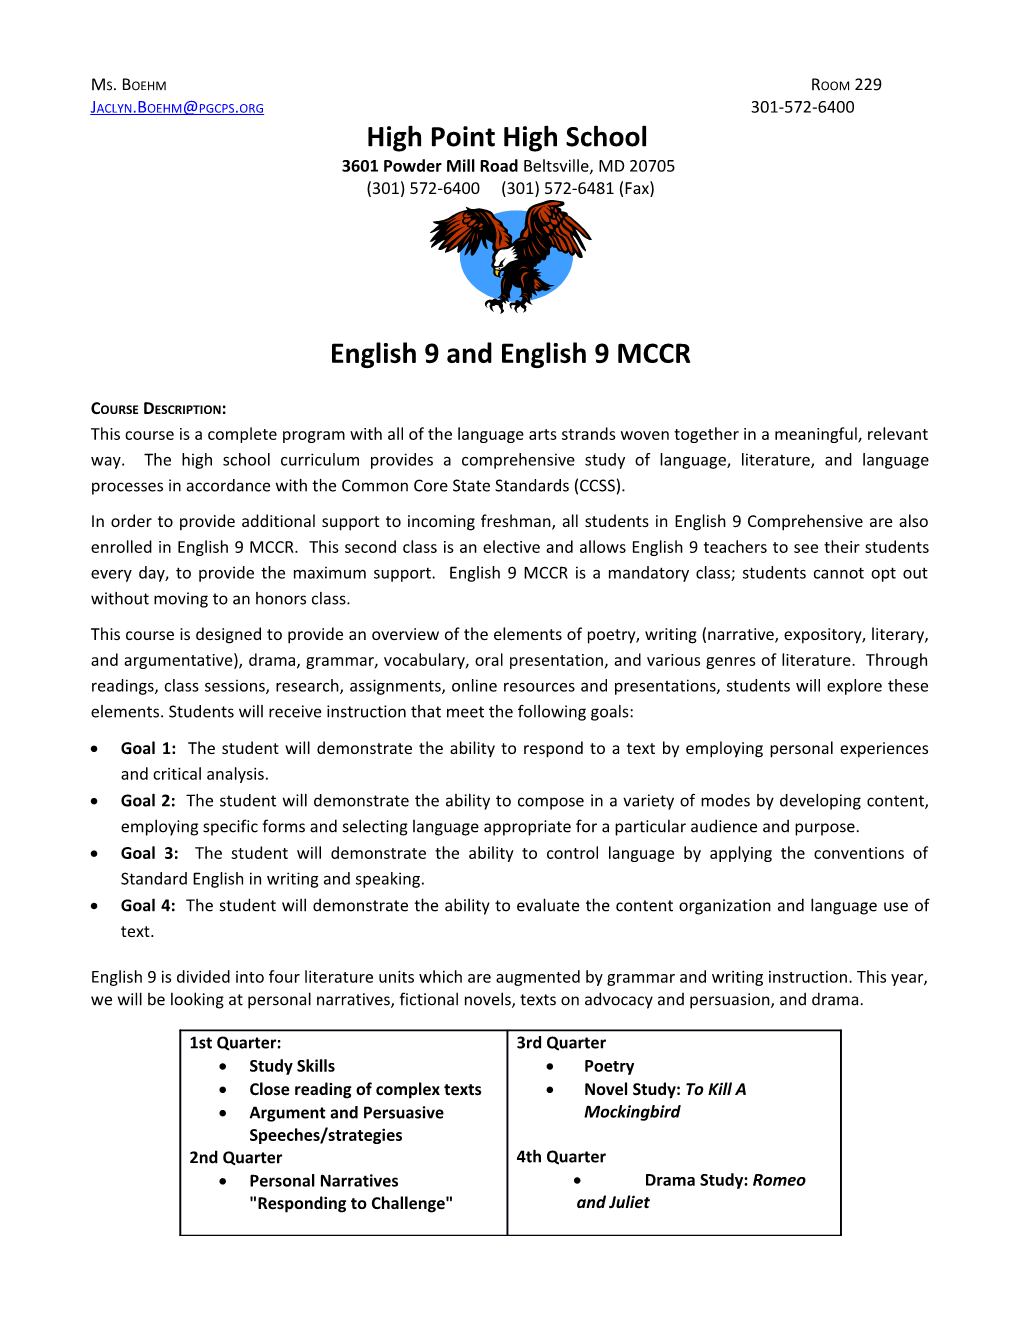 English 9 and English 9 MCCR